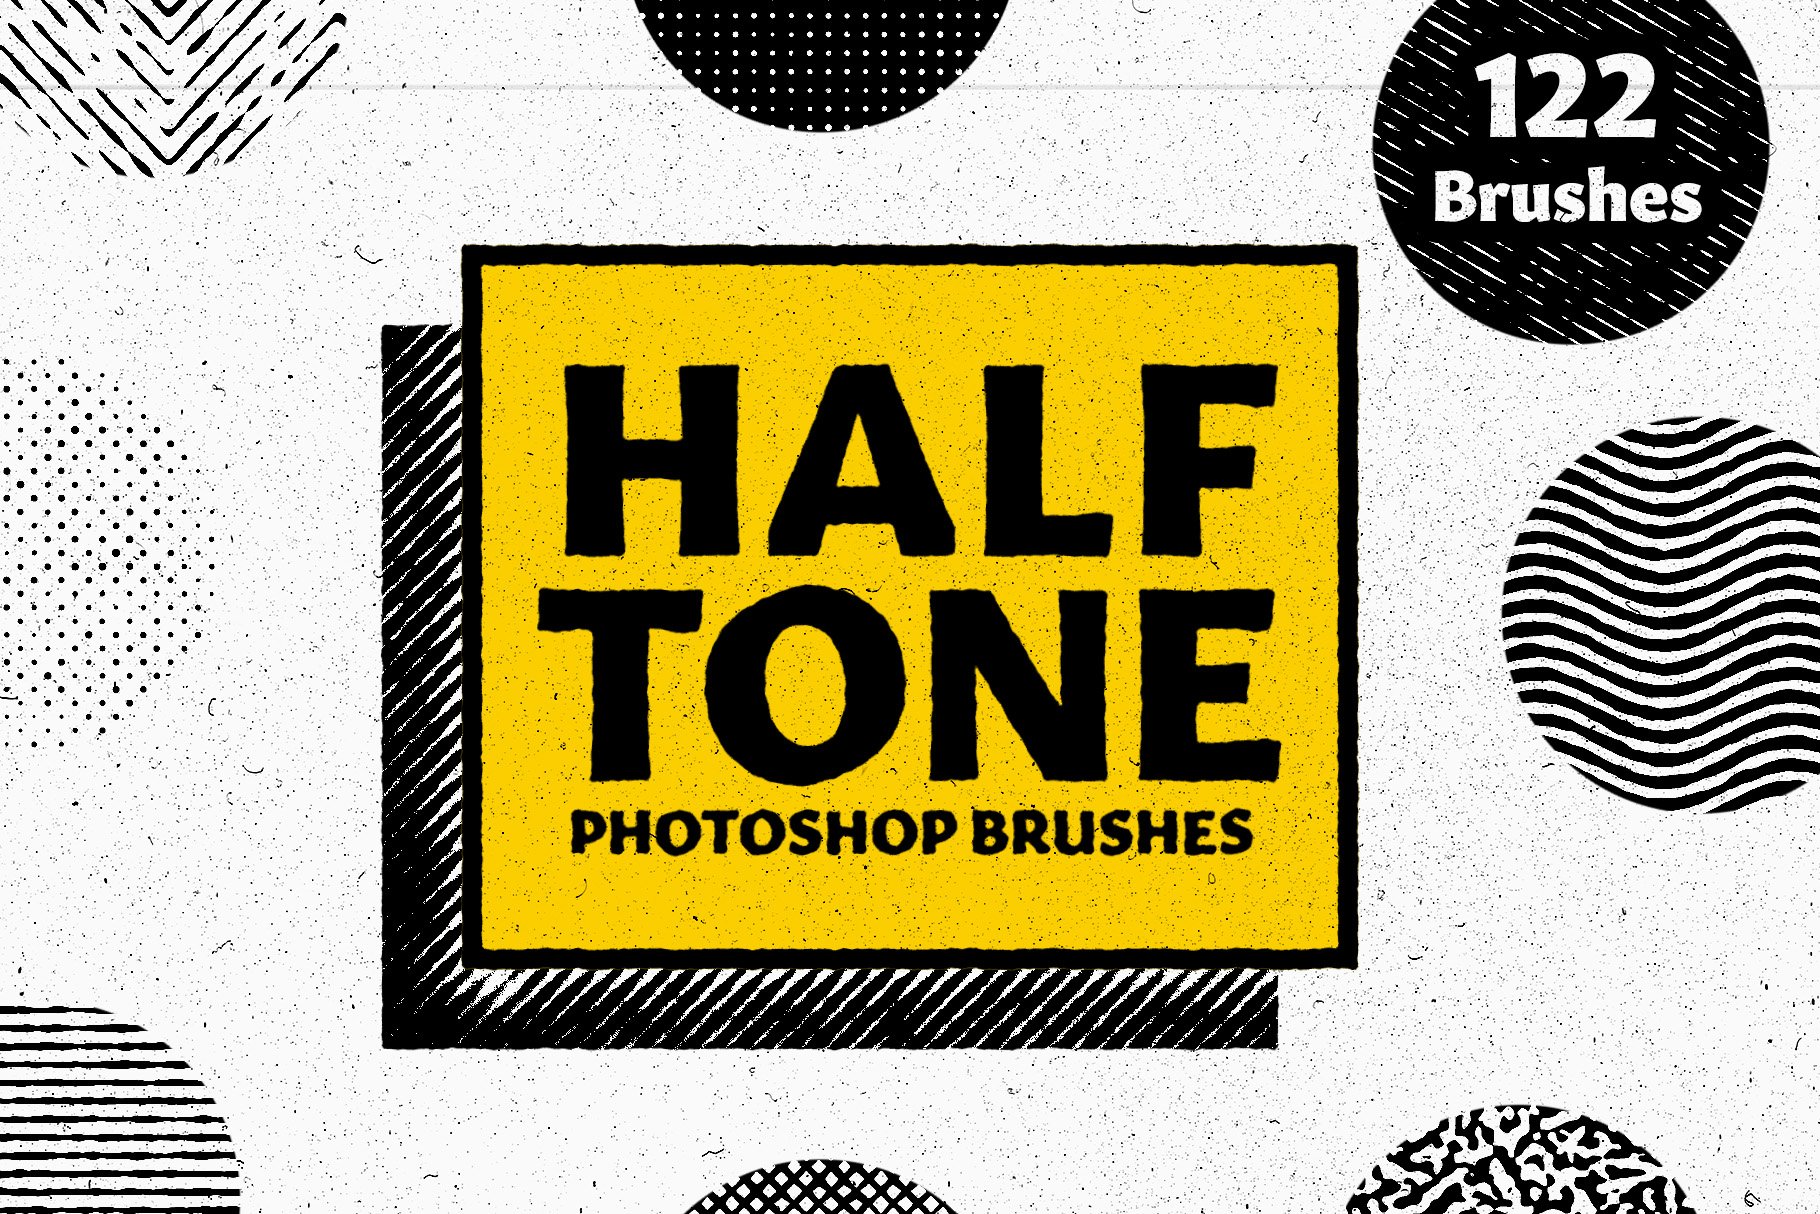 HALFTONE - Brushes for Photoshopcover image.